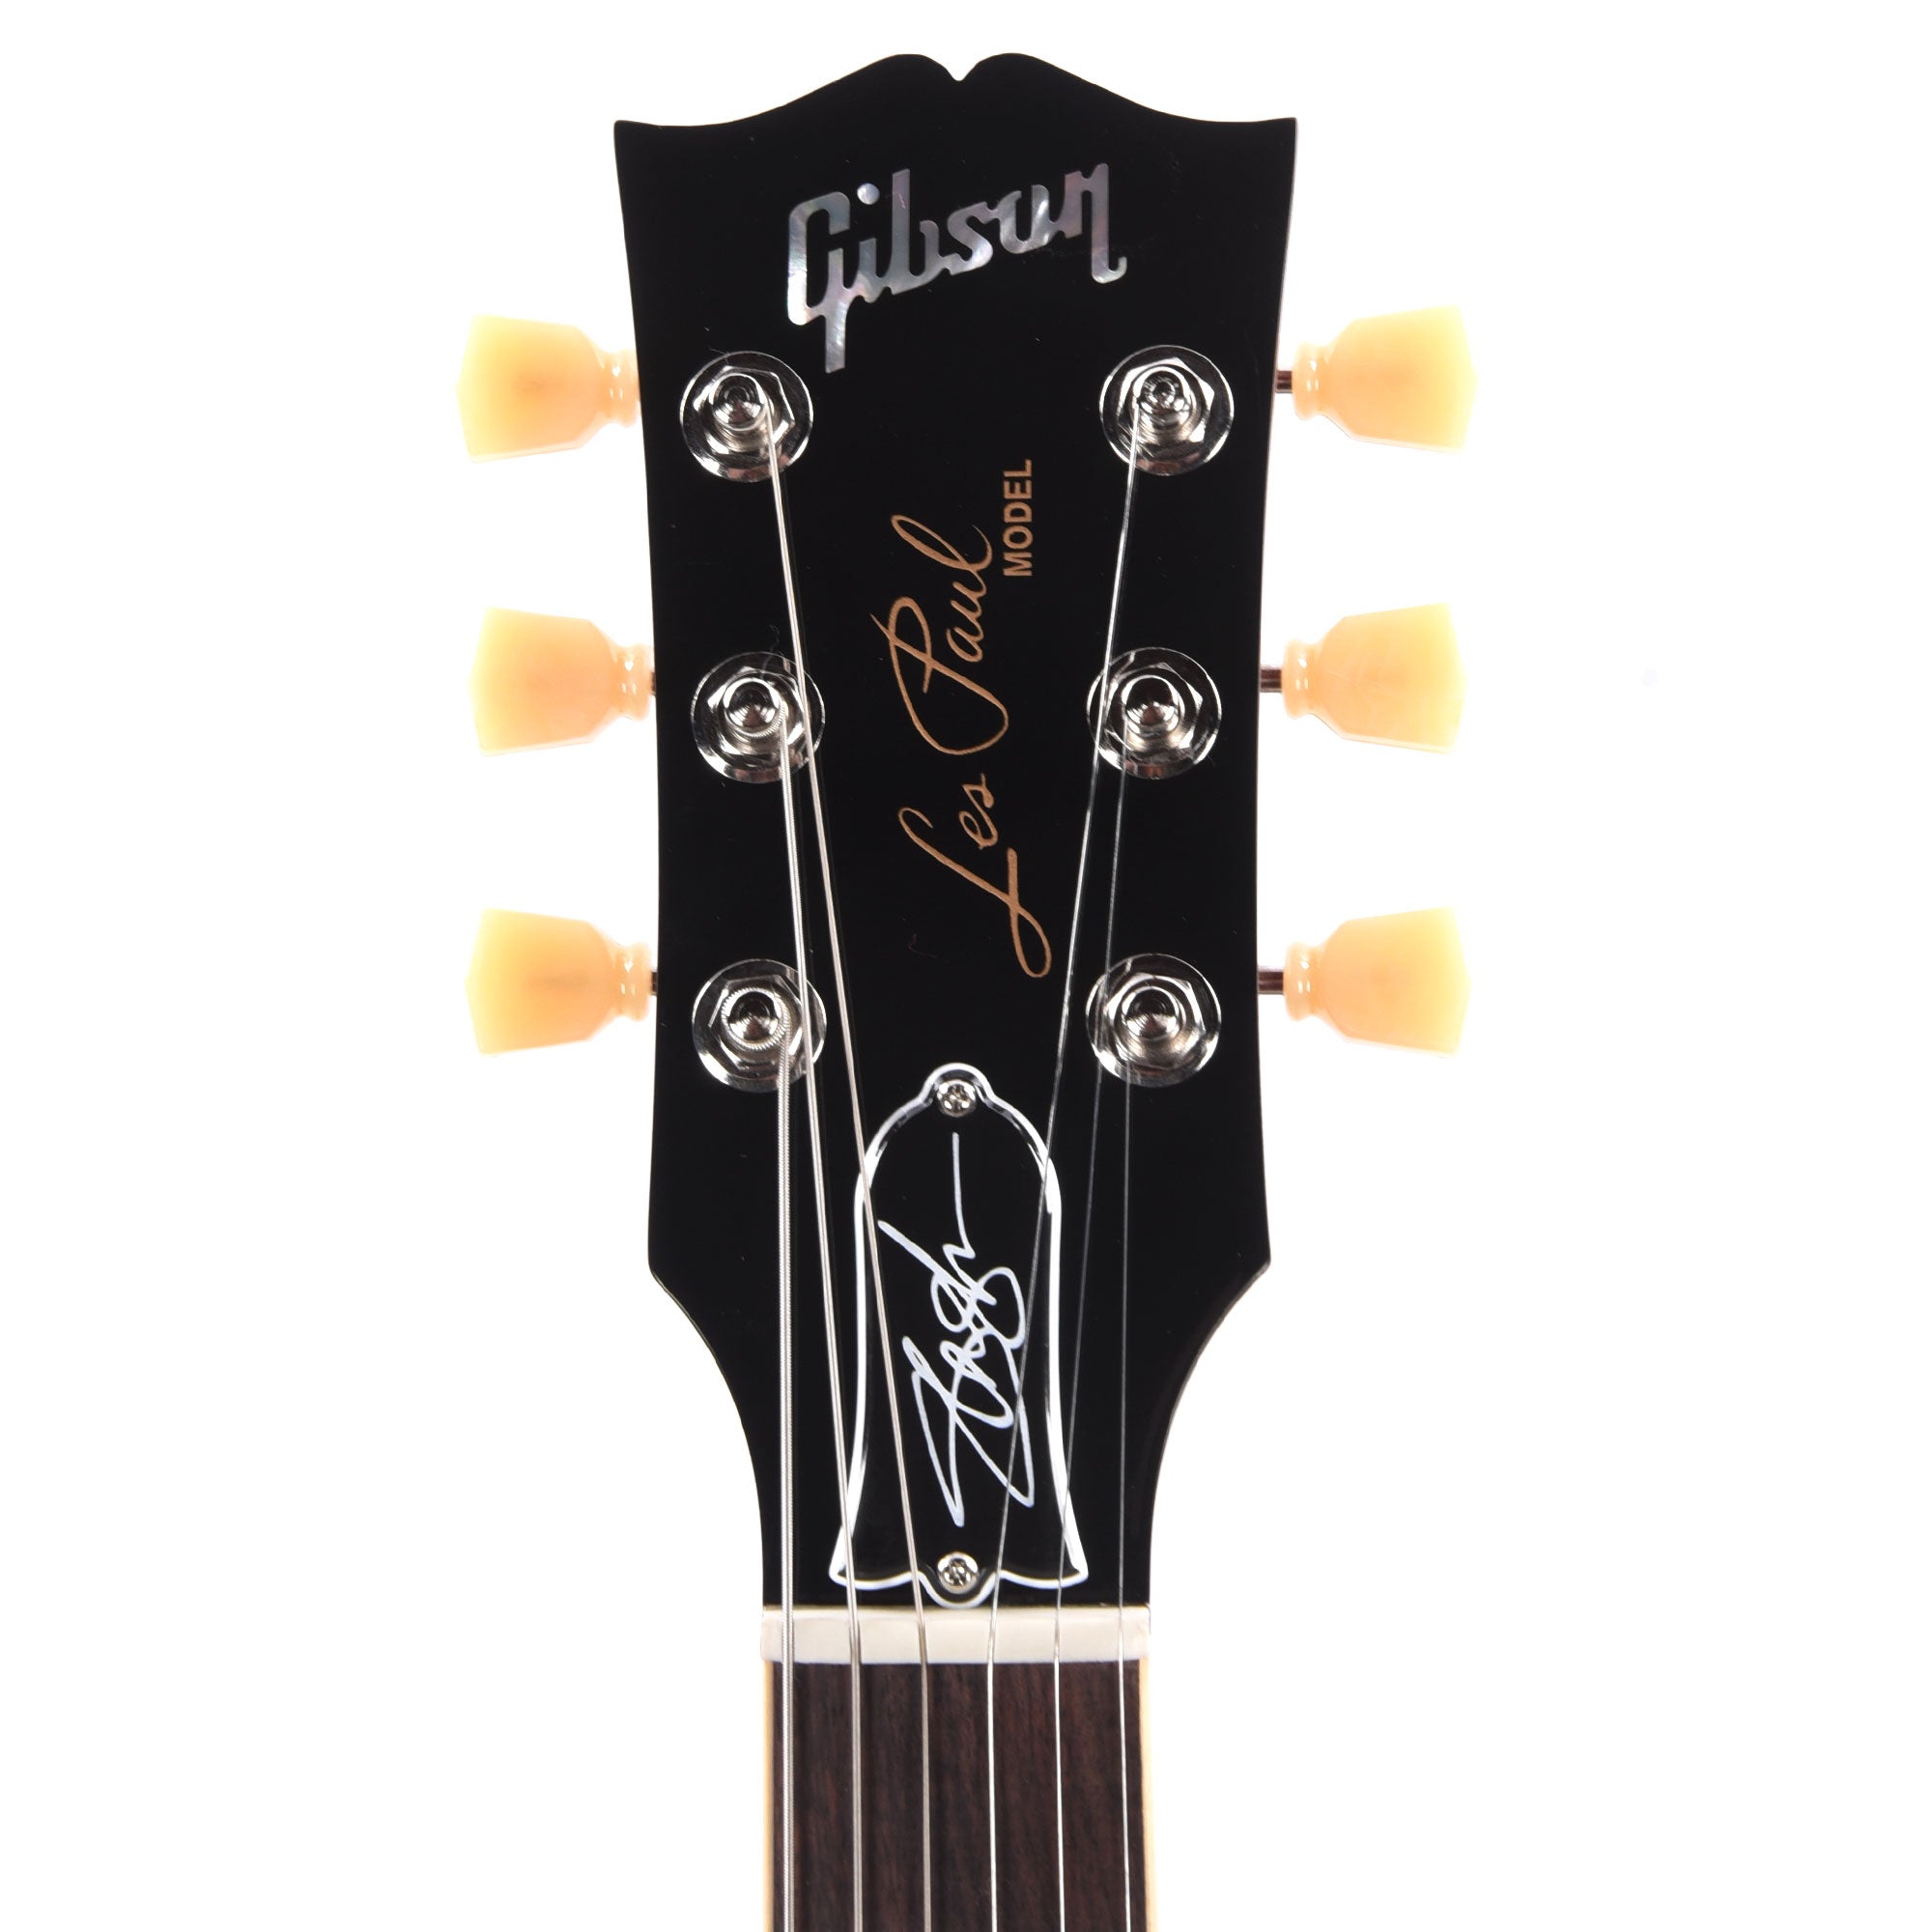 Gibson Artist Slash Les Paul Standard 